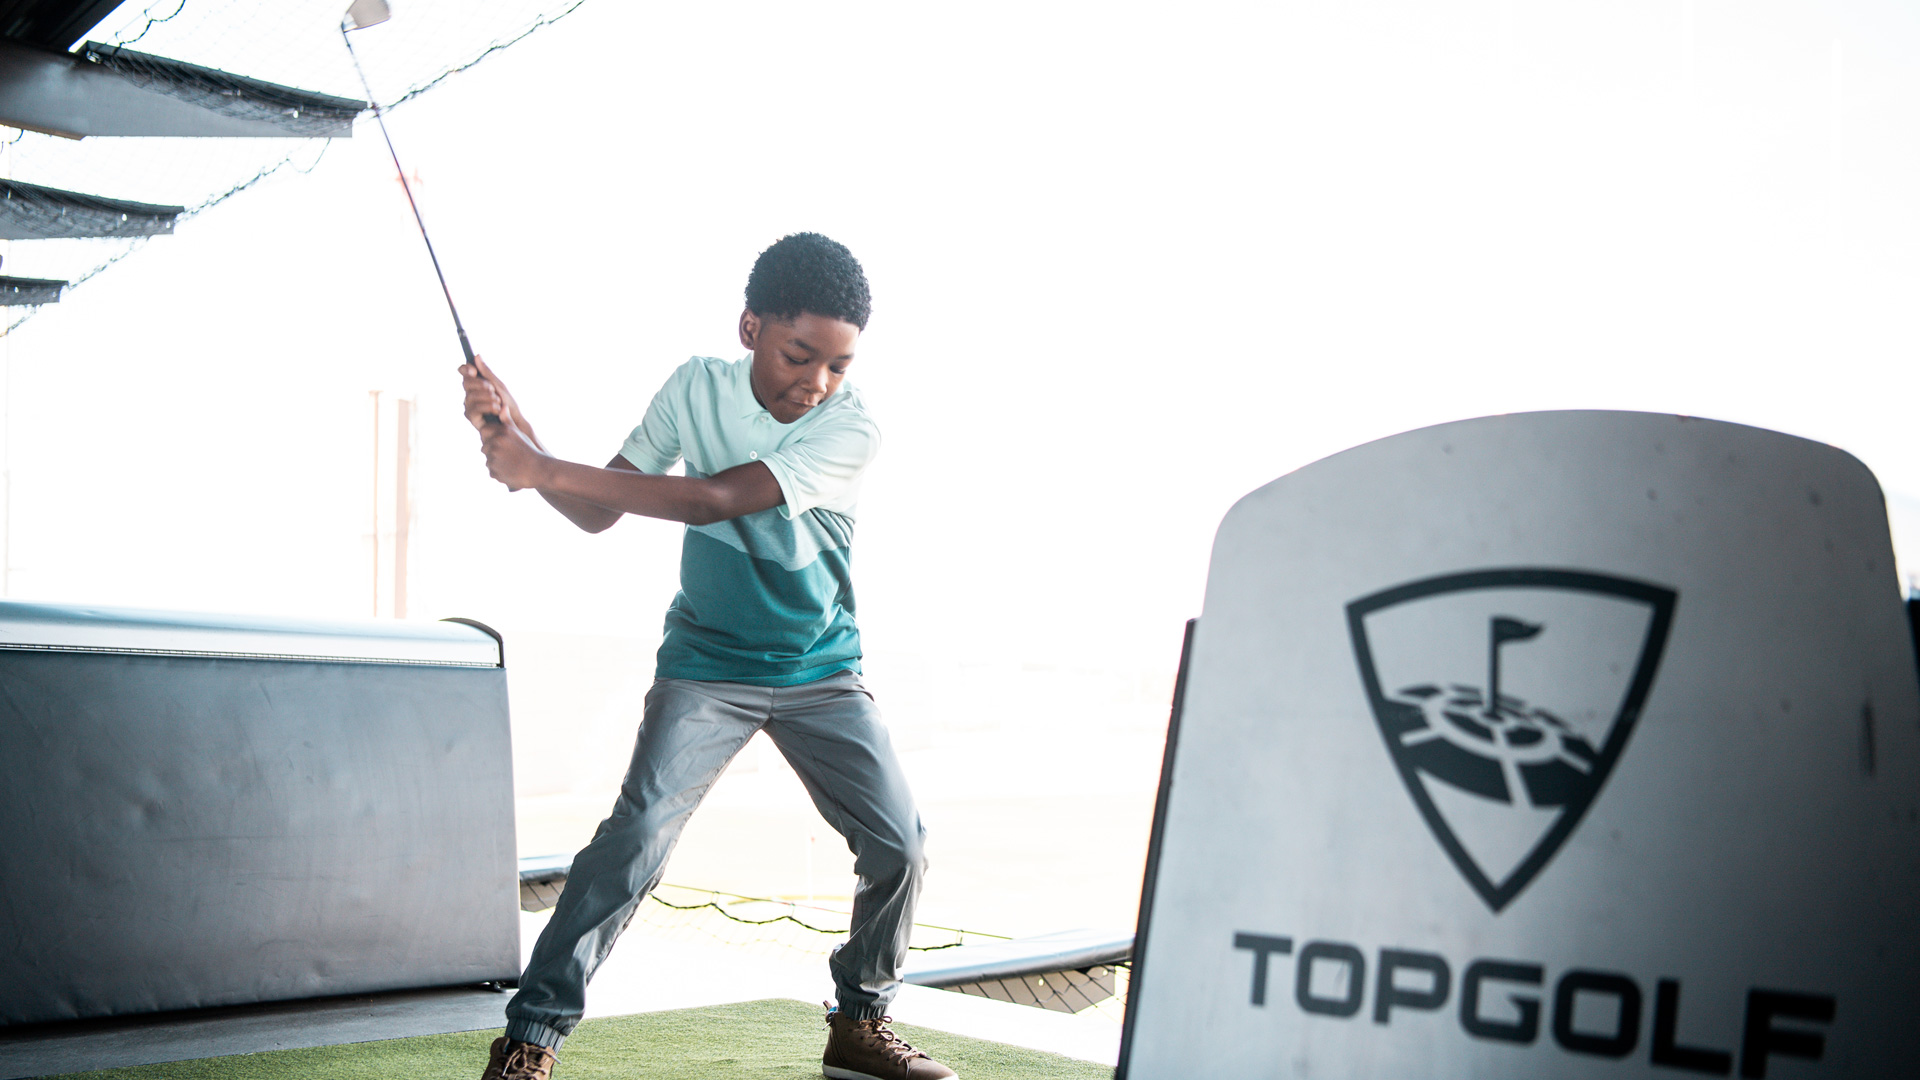 Child swinging golf club inside a bay at Topgolf